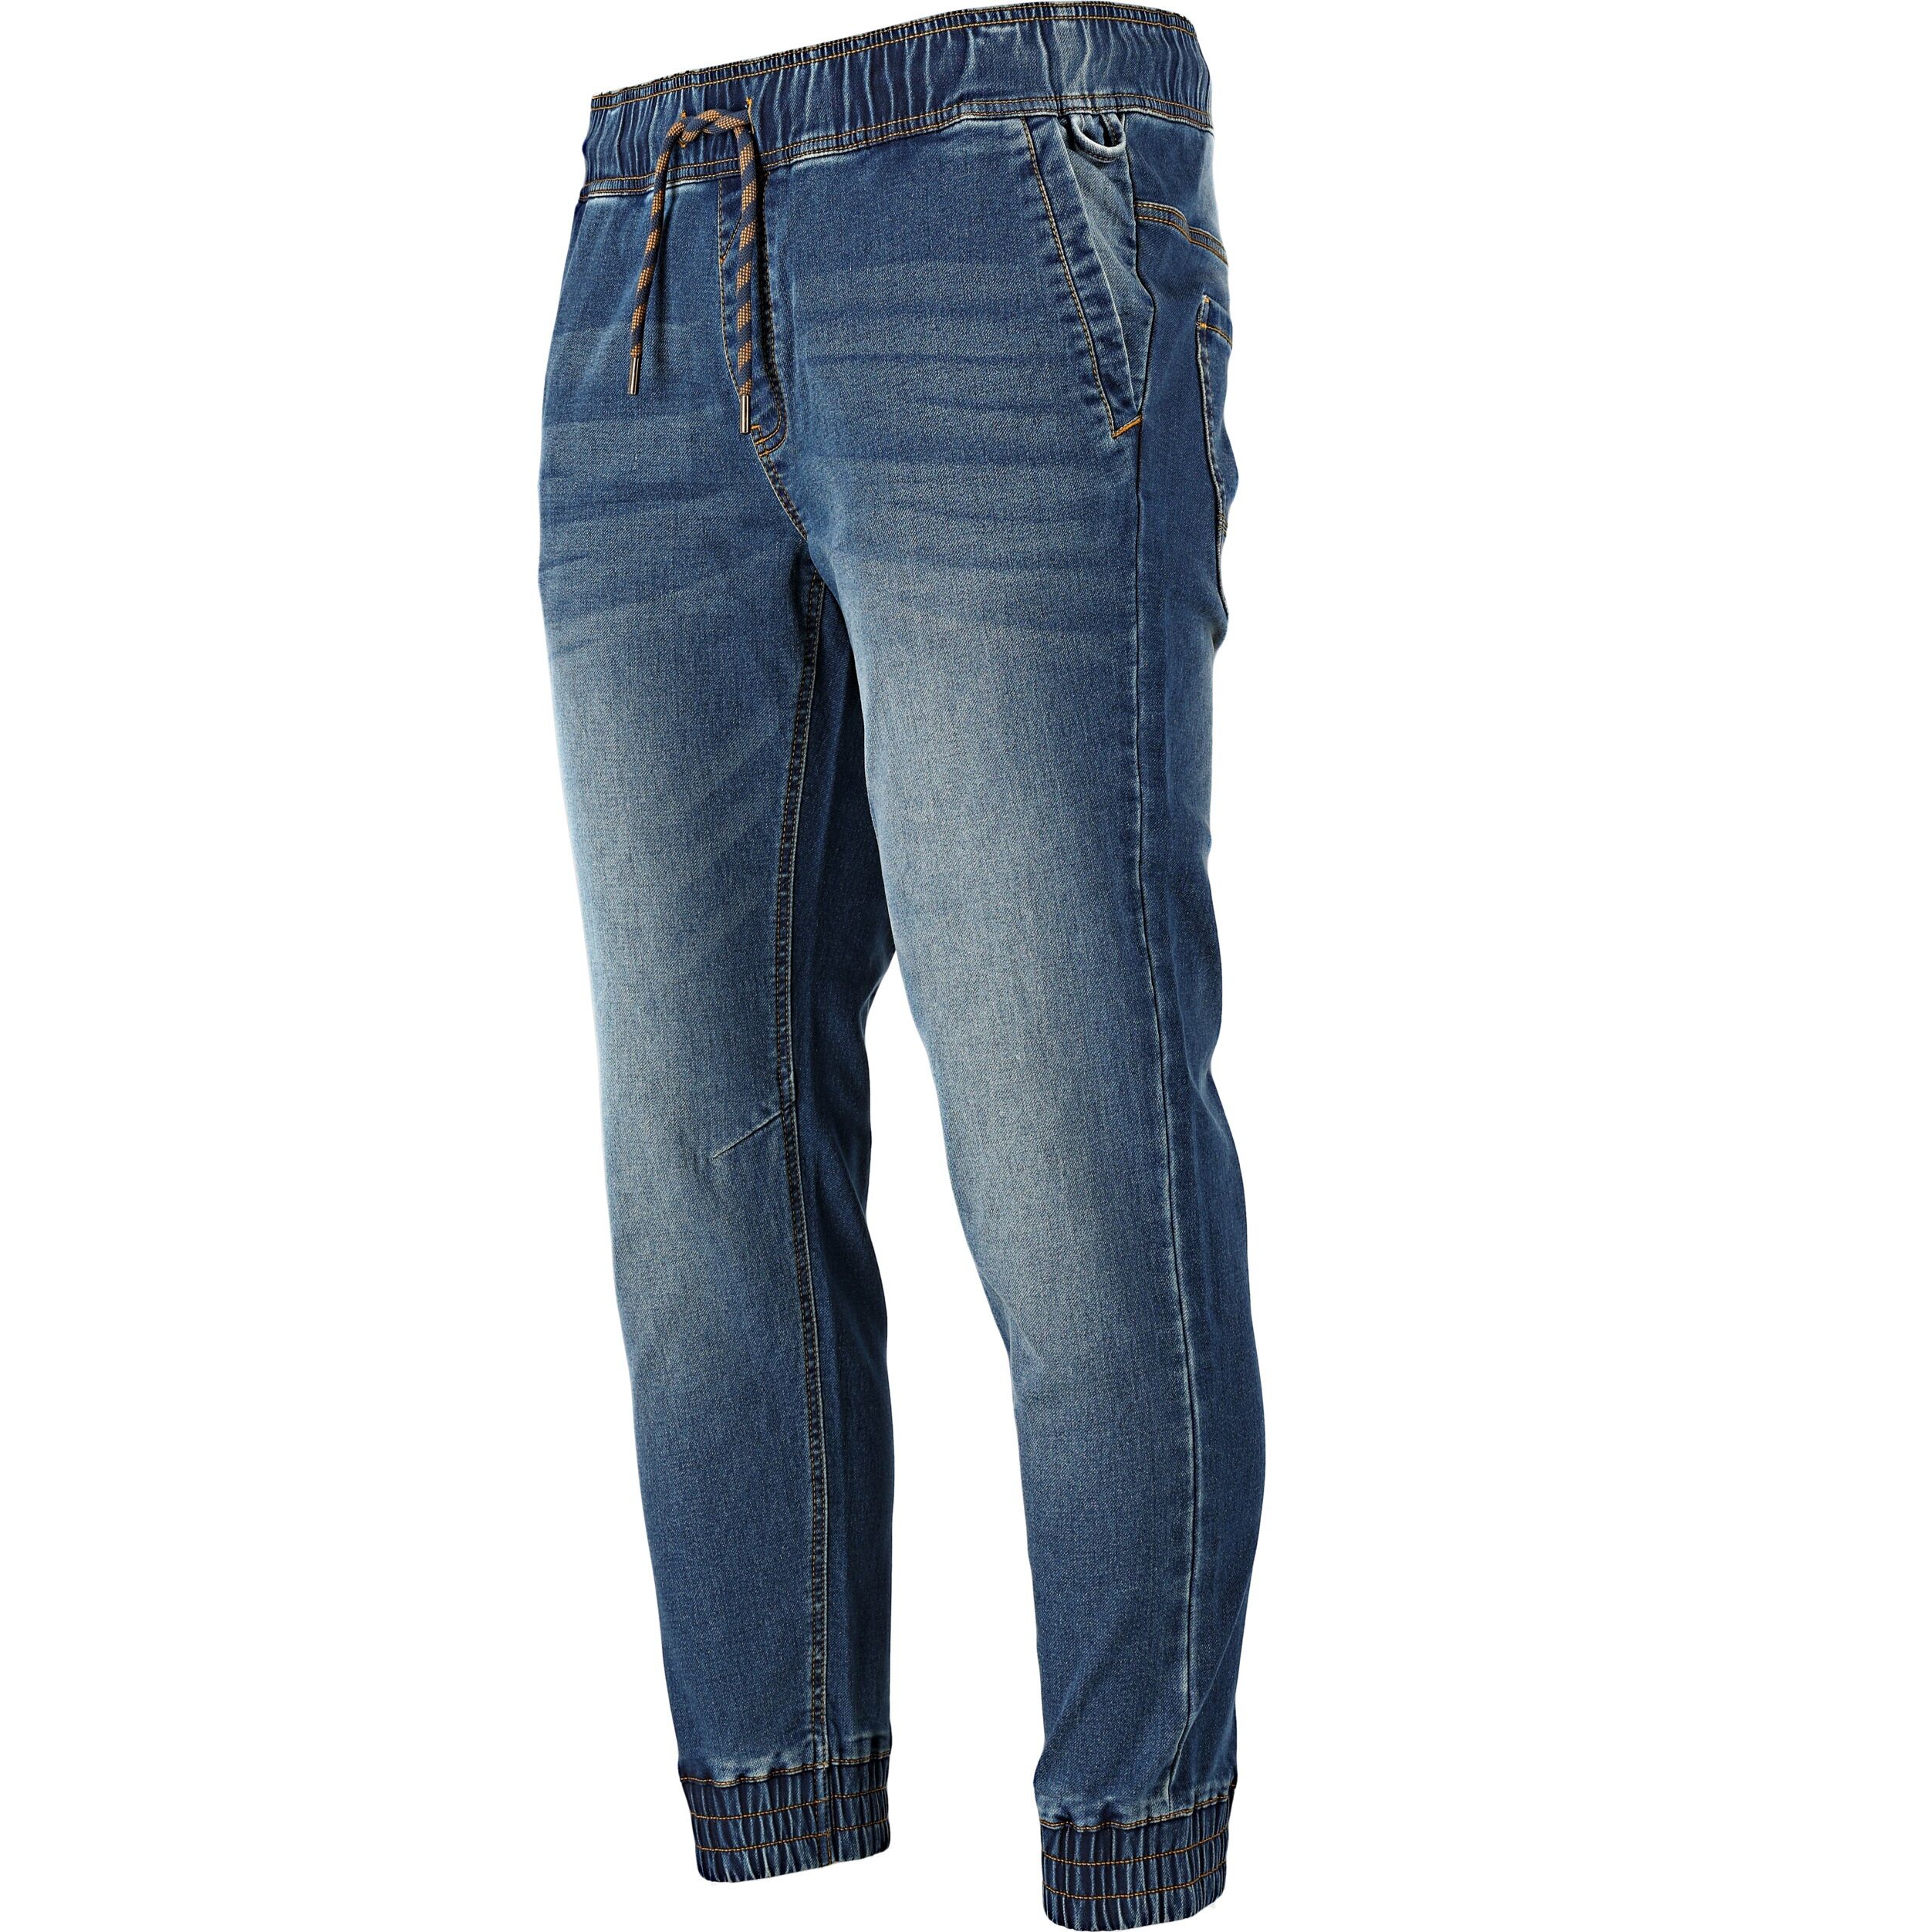 L4053504--Spodnie joggery jeansowe niebieskie stretch, "xl", ce, lahti